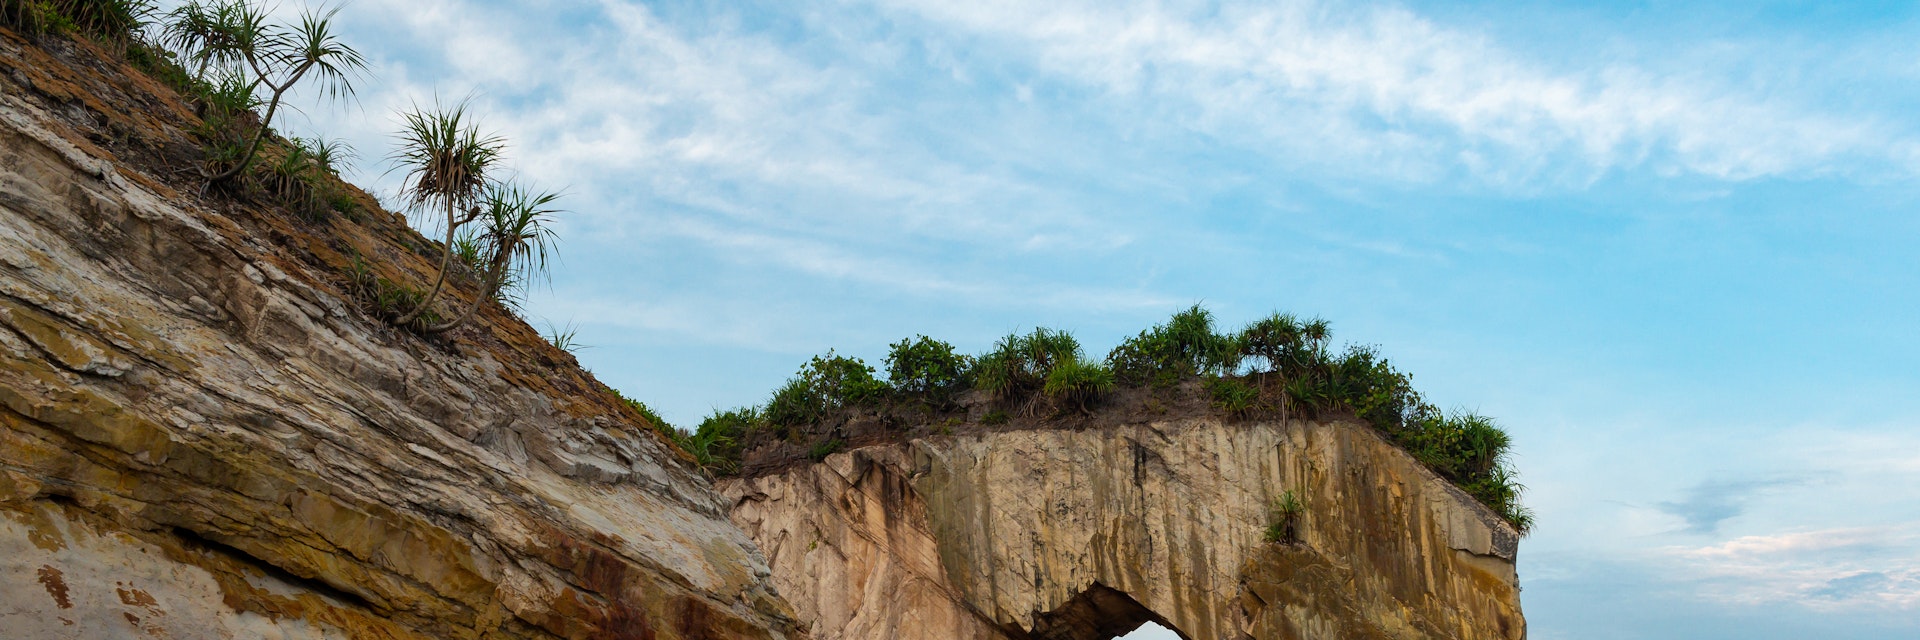 Tusan Cliff Sarawak also known as Horse Rock near Miri, Malaysia